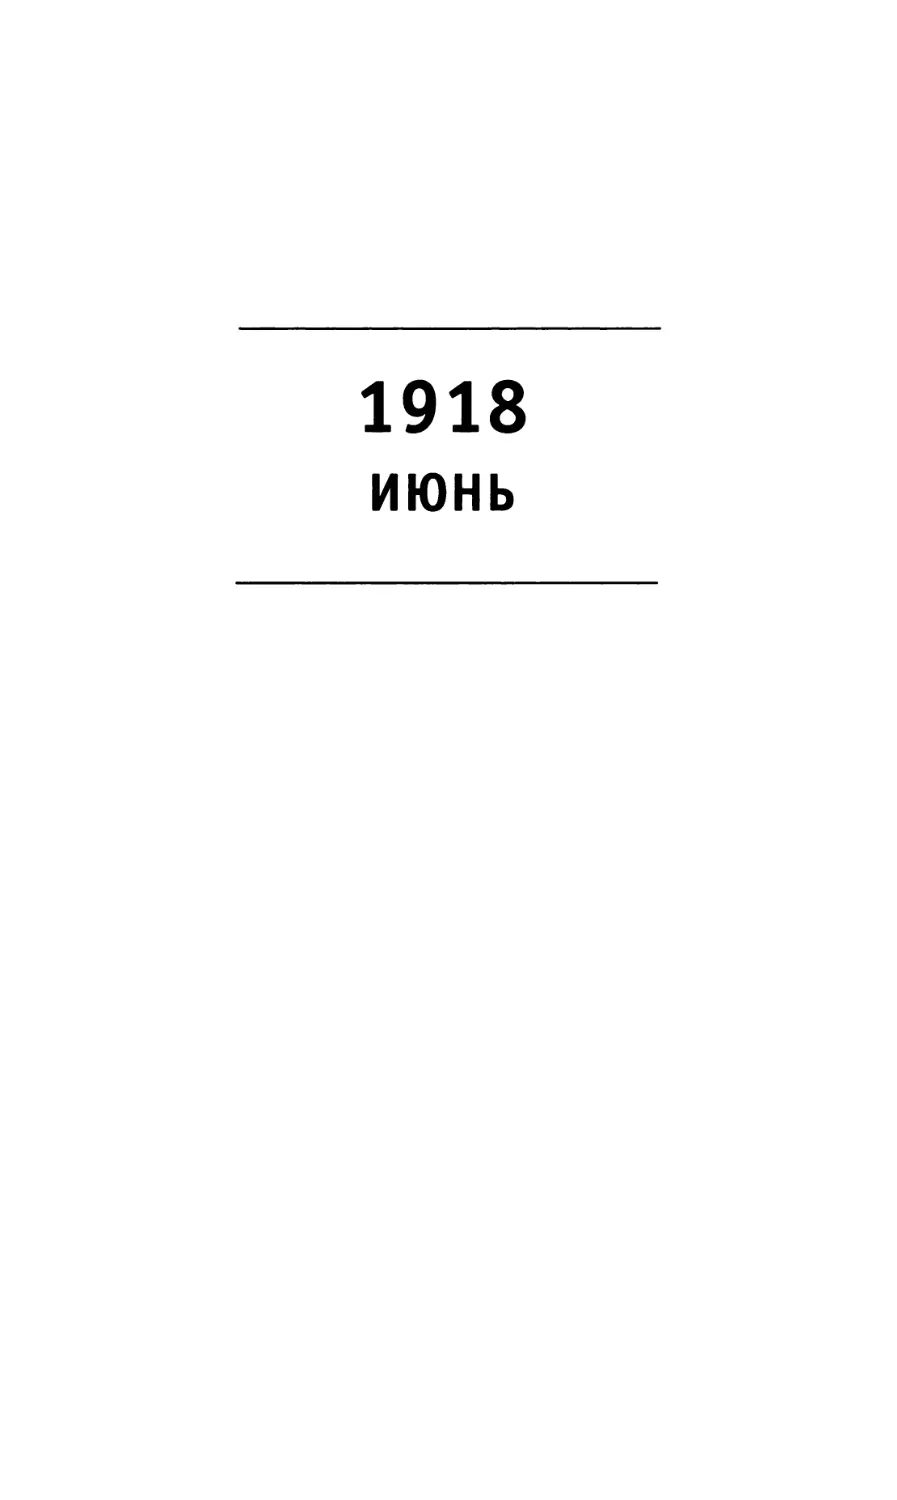 1918 Июнь